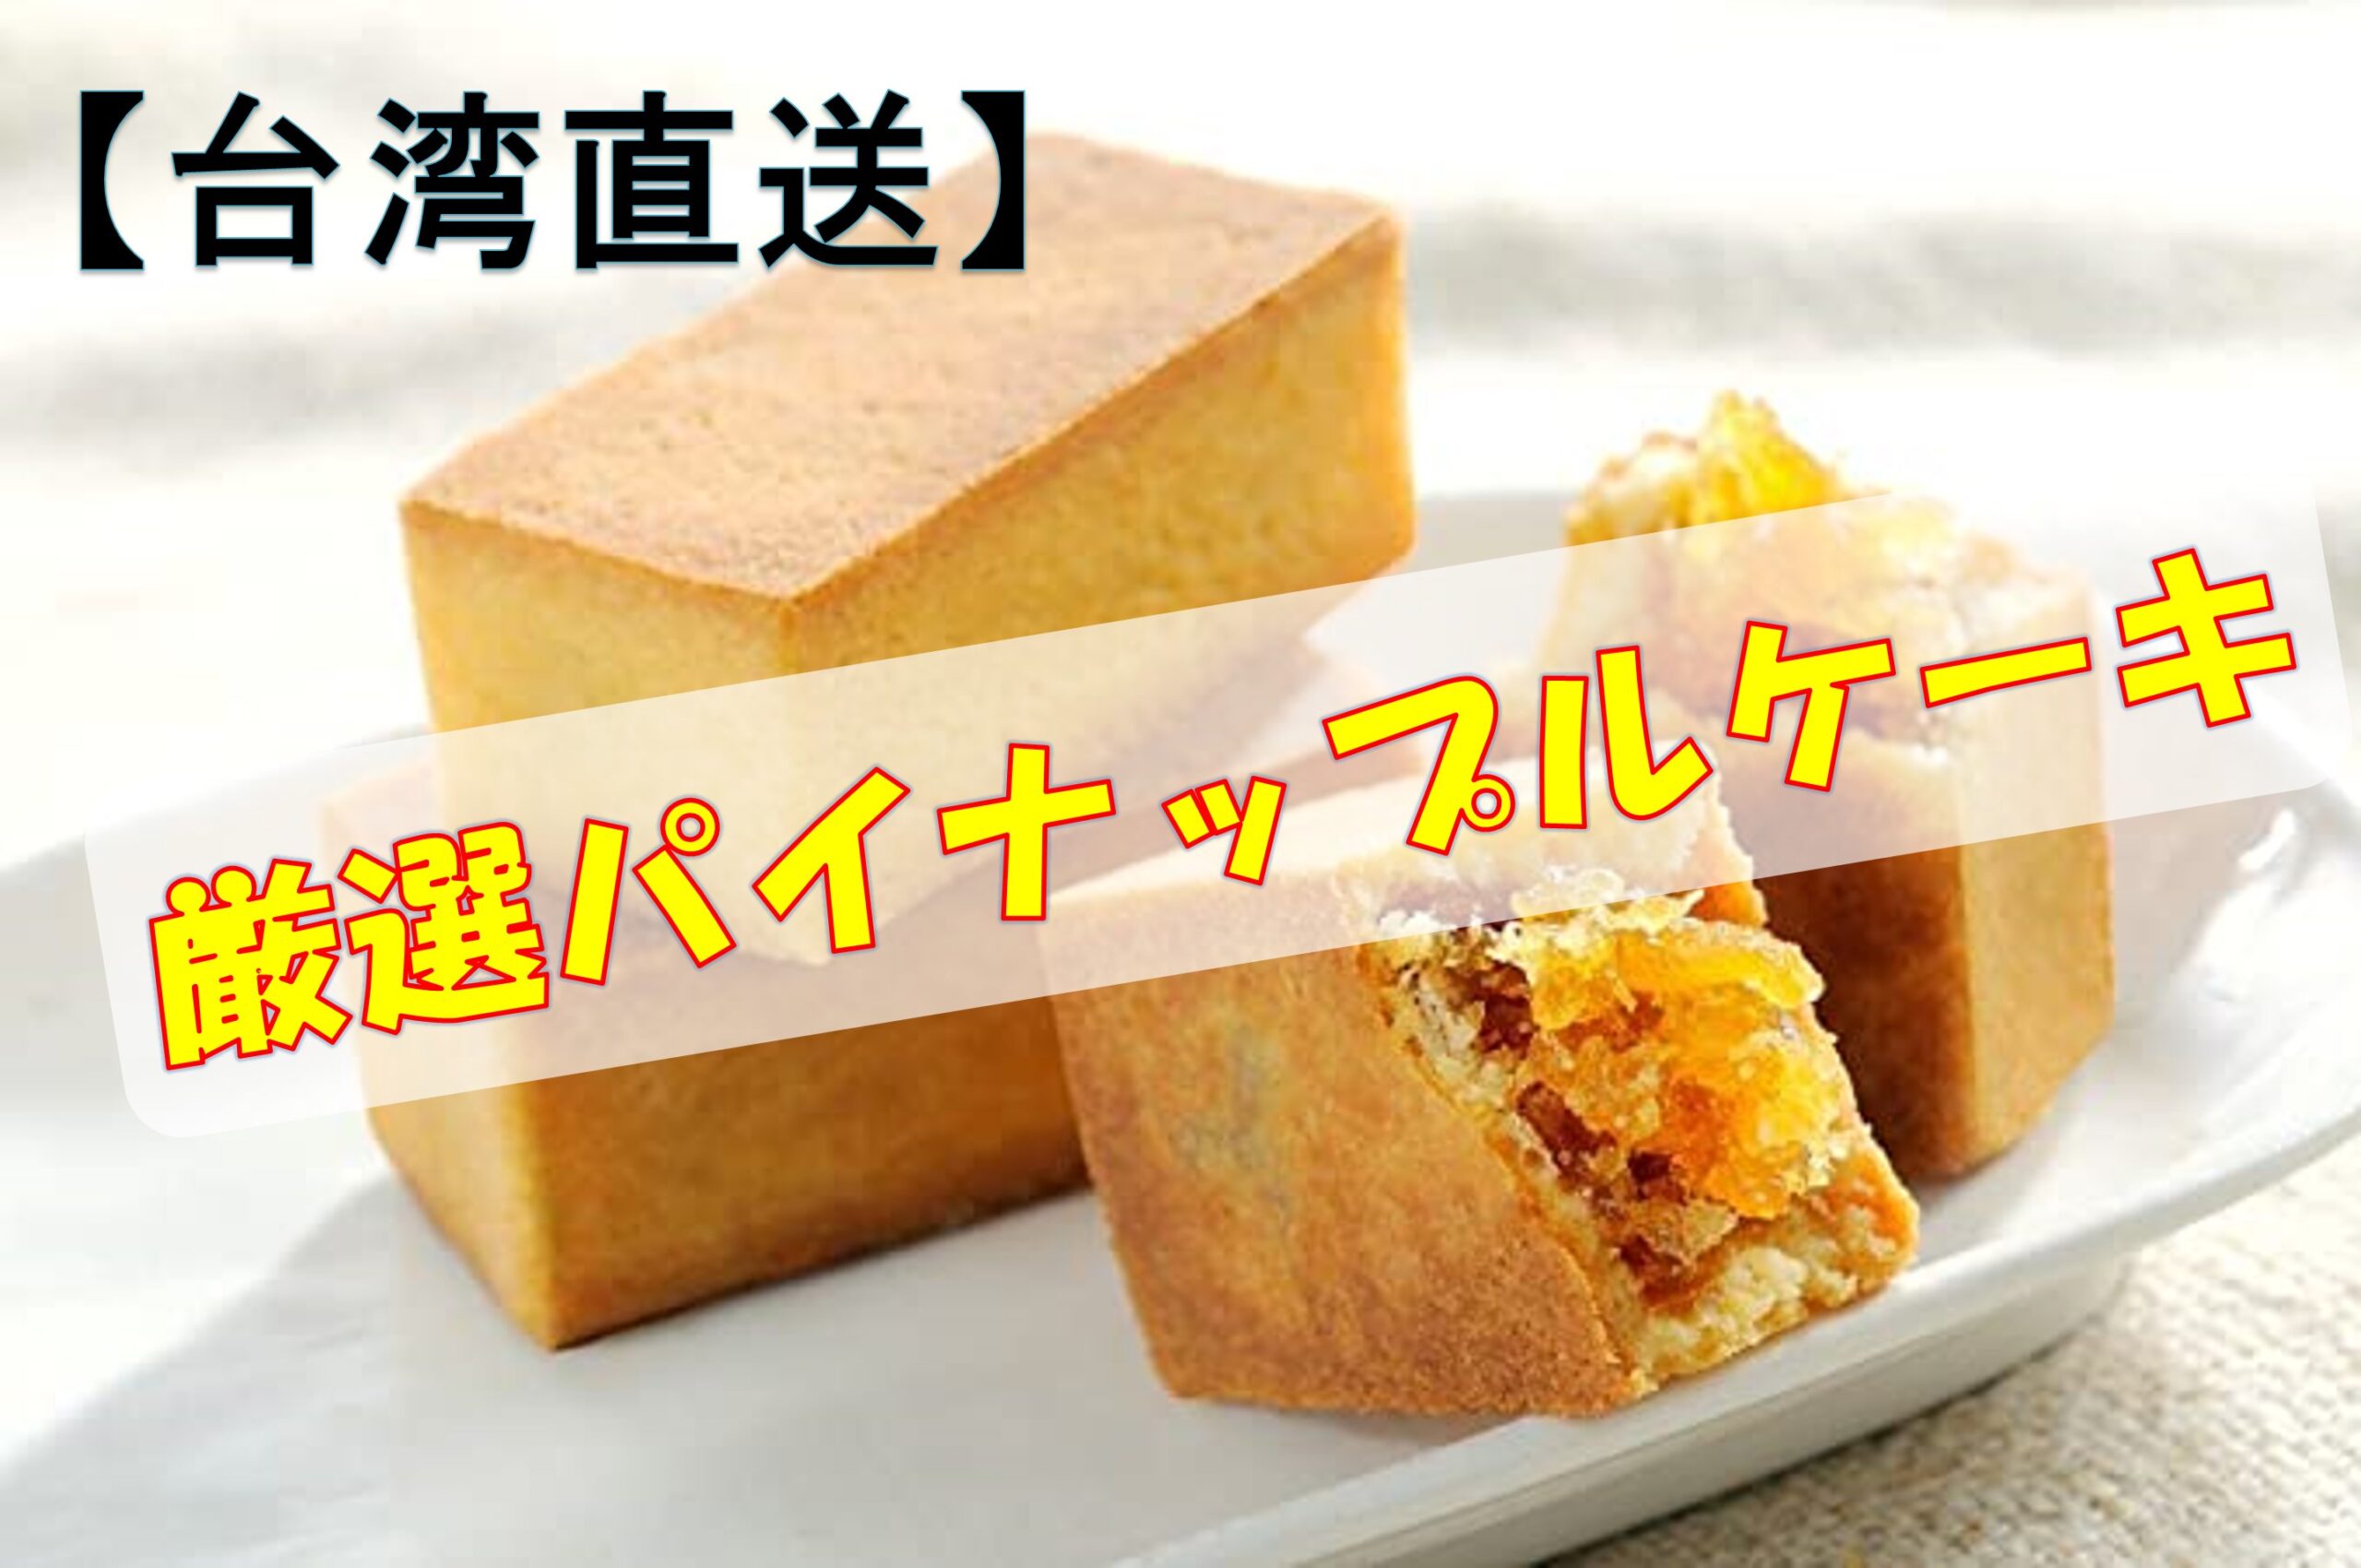 台湾直送 パイナップルケーキ 厳選 ネットで購入できる 店舗情報あり Taichi Blog